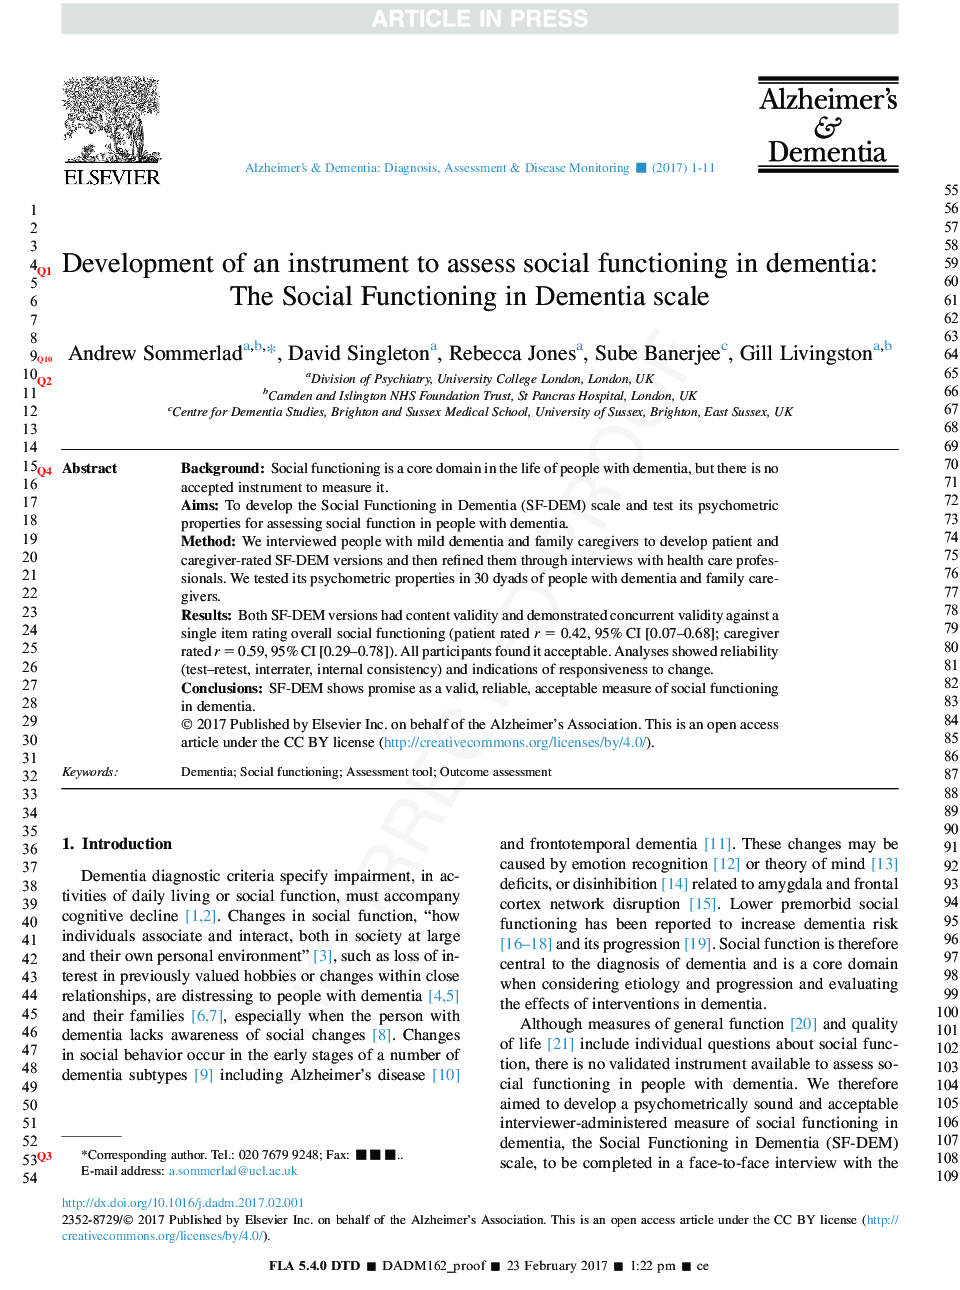 Development of an instrument to assess social functioning in dementia: The Social Functioning in Dementia scale (SF-DEM)